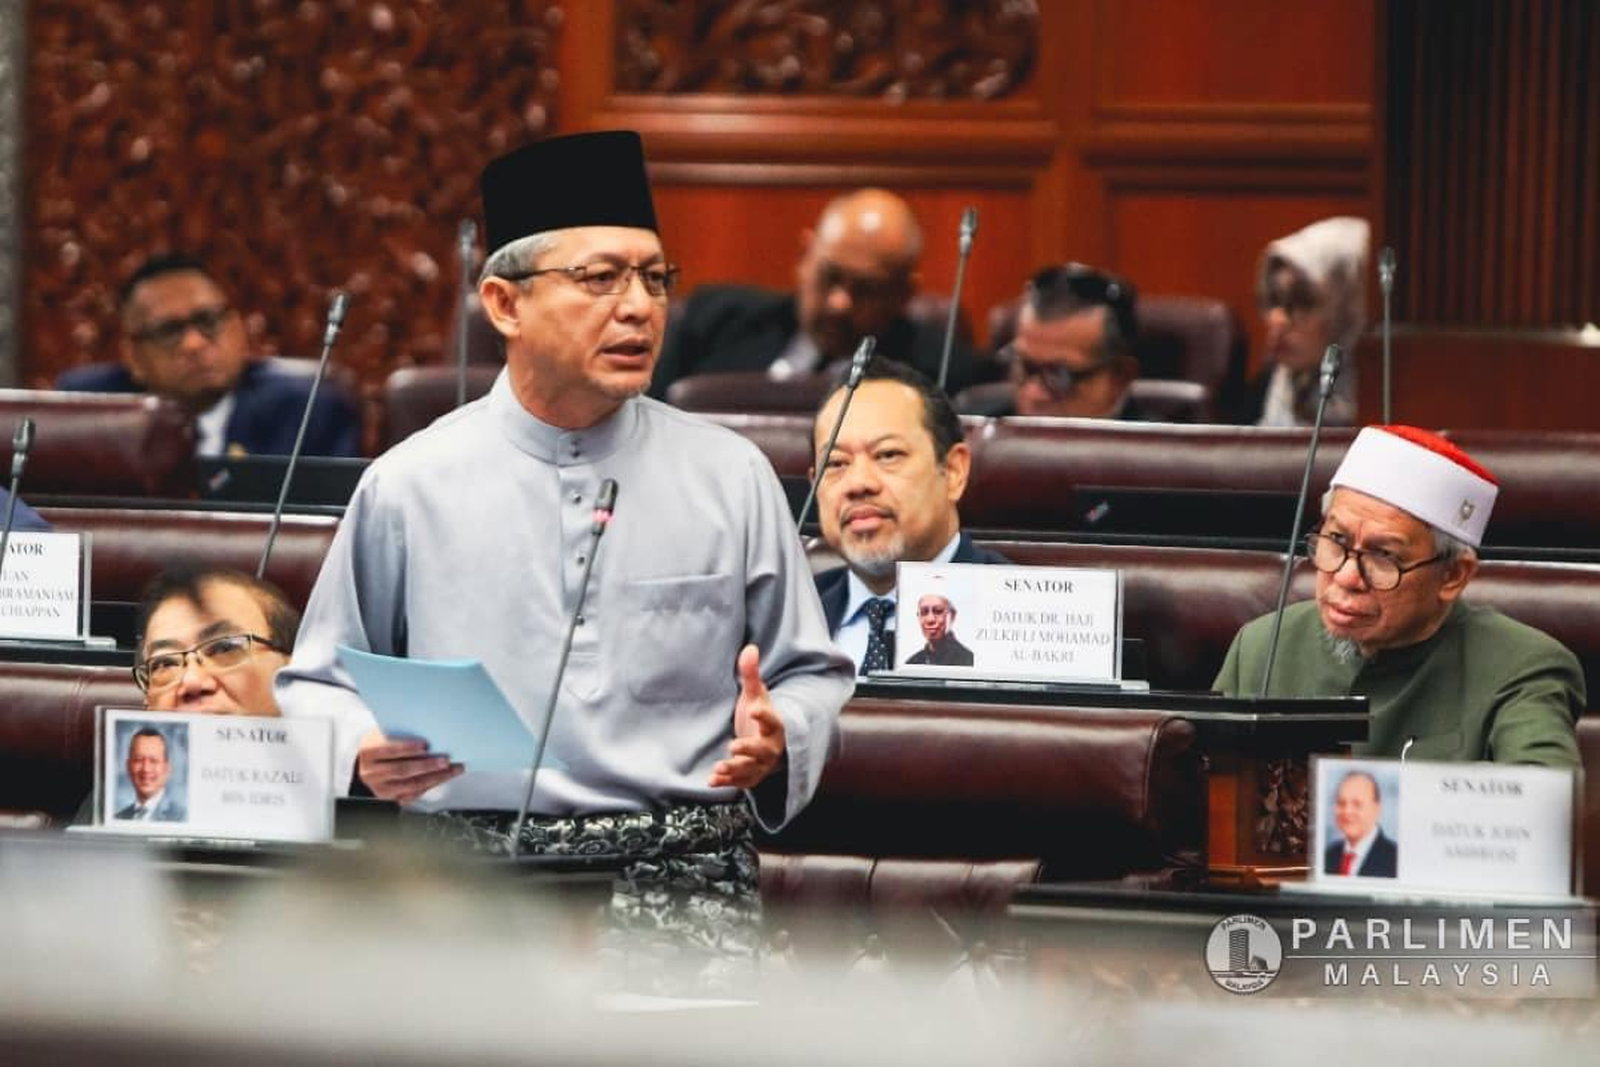 Razali Idris - Gambar dari Parlimen Malaysia